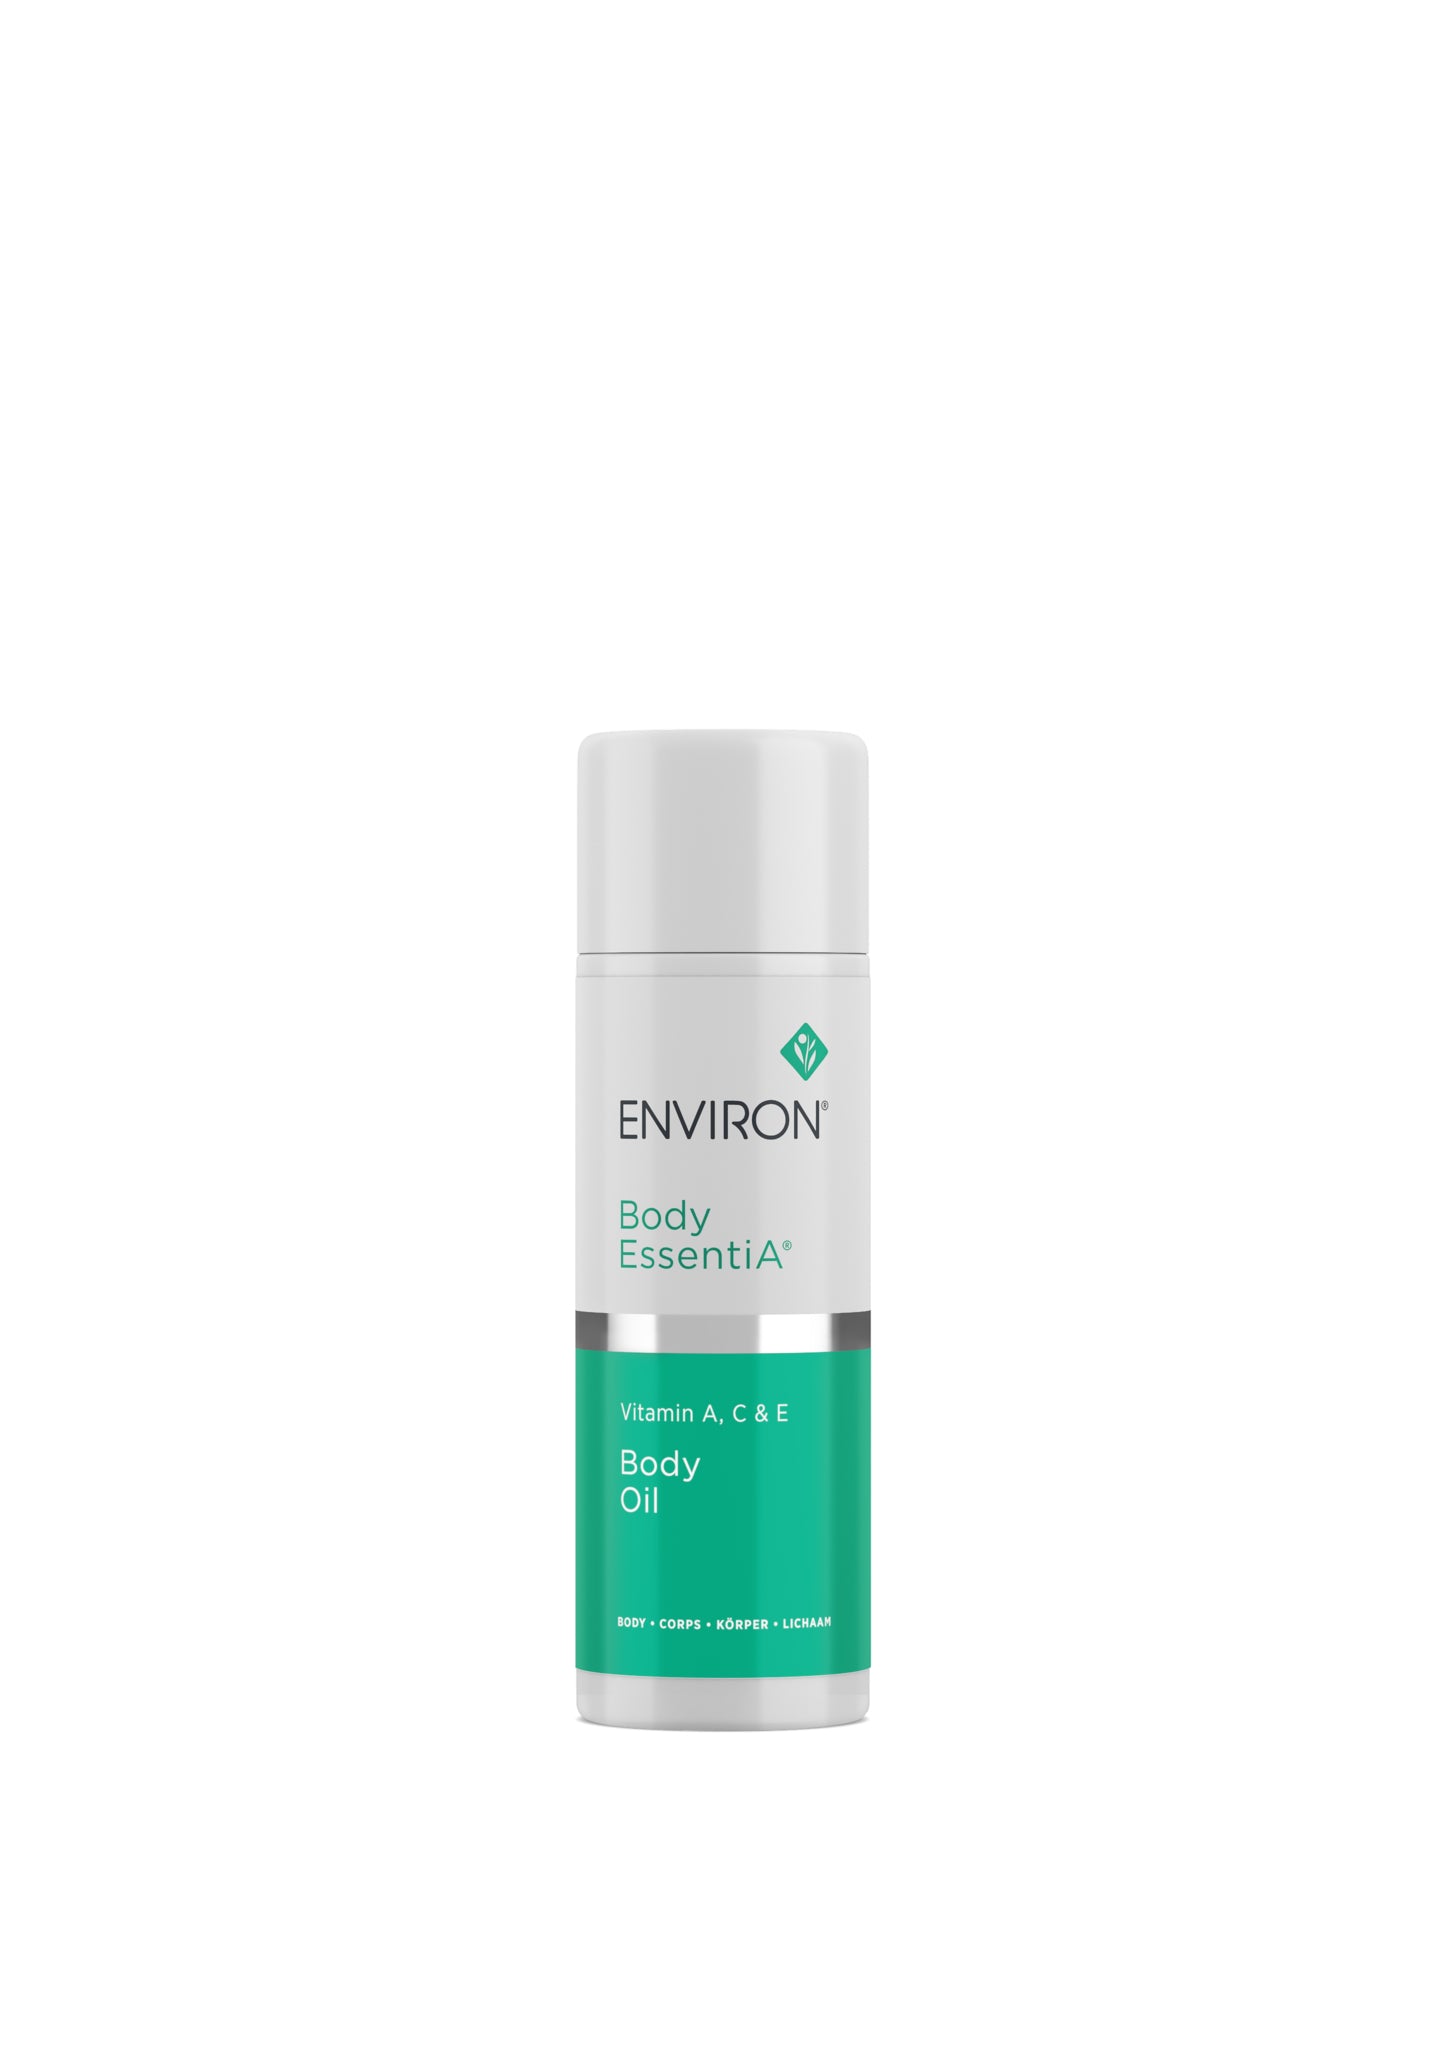 Environ Body EssentiA range - Vitamin A, C & E Body Oil